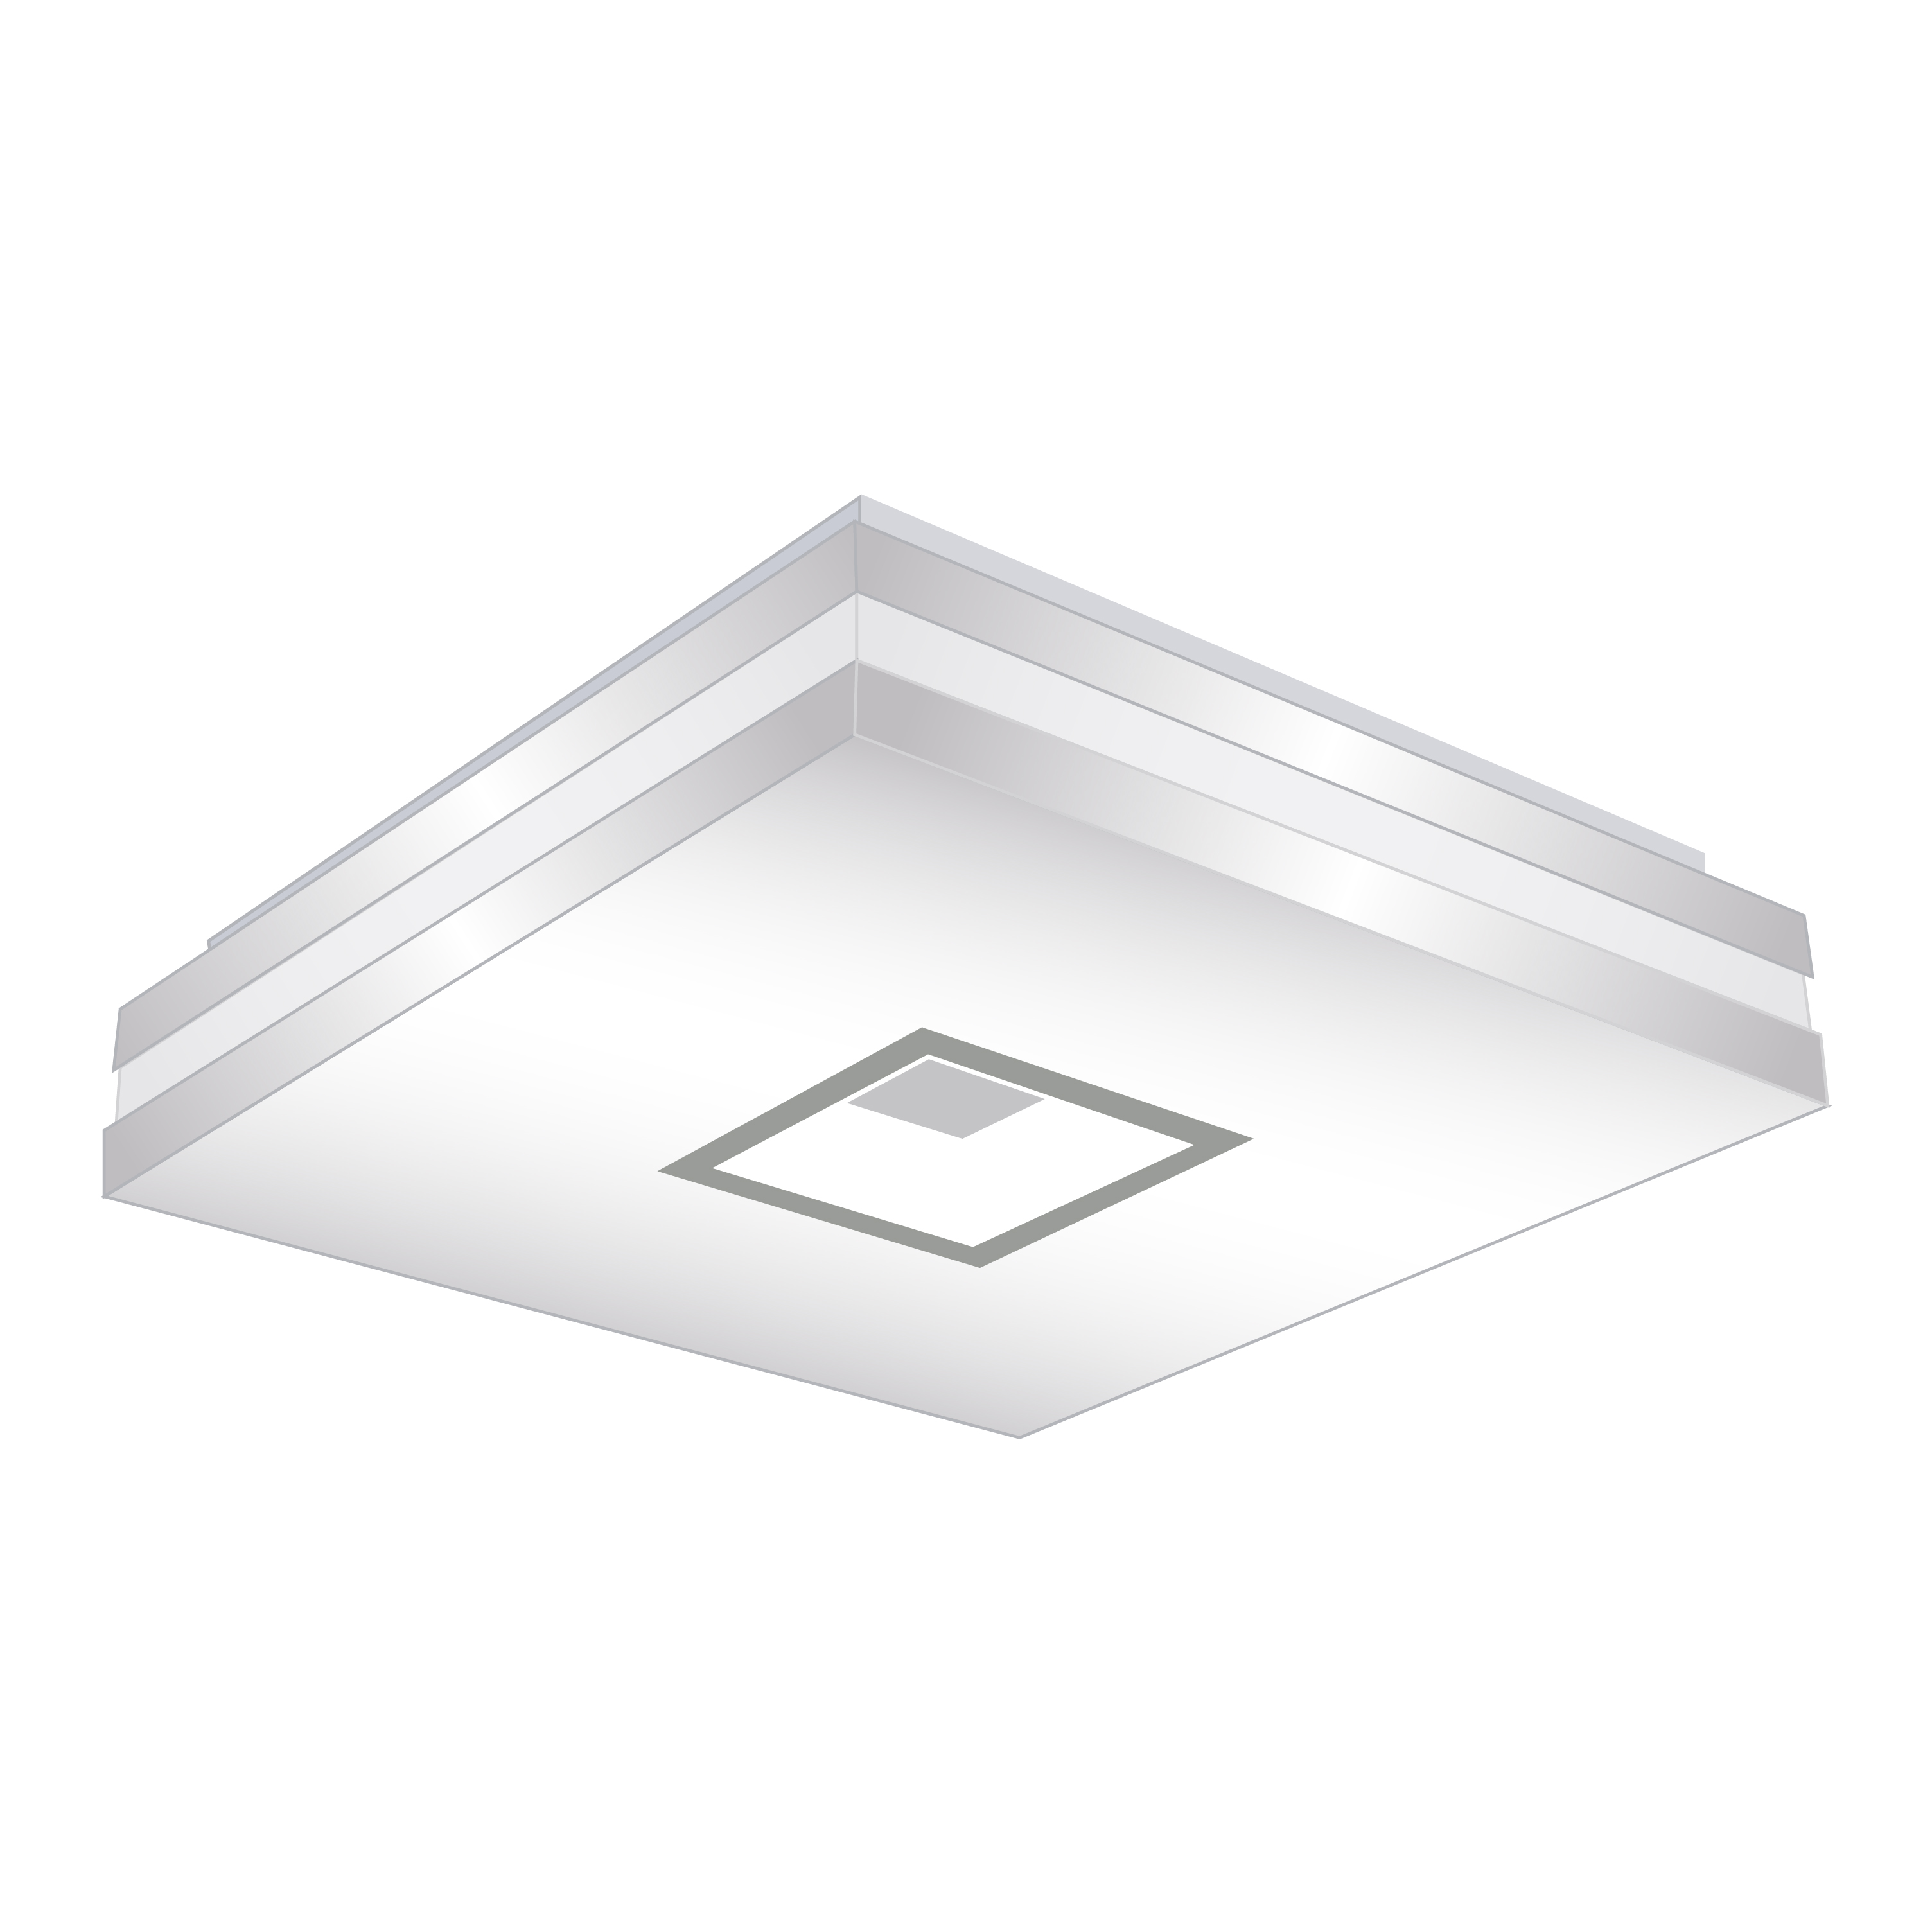 Đèn LED ốp trần vuông – CE342C PGHOME - Nhà Tắm - Nhà Bếp- Gạch ốp ...